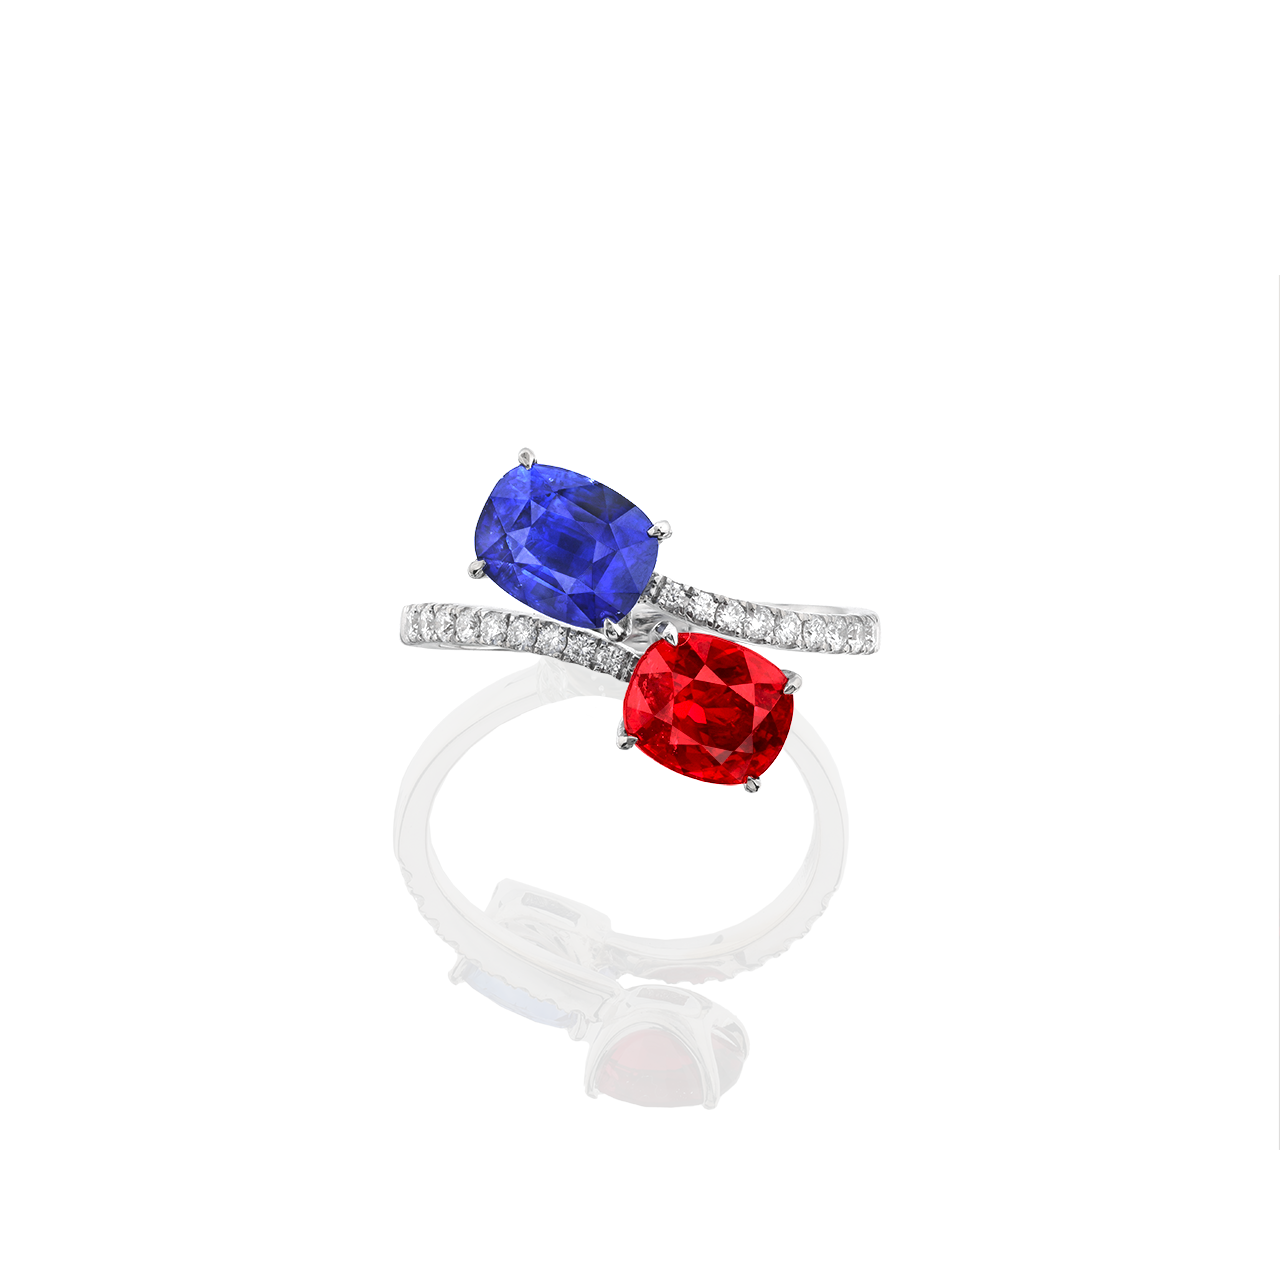 2.08克拉 藍寶 1.44克拉 紅尖晶戒
Blue Sapphire and Red Spinel Ring